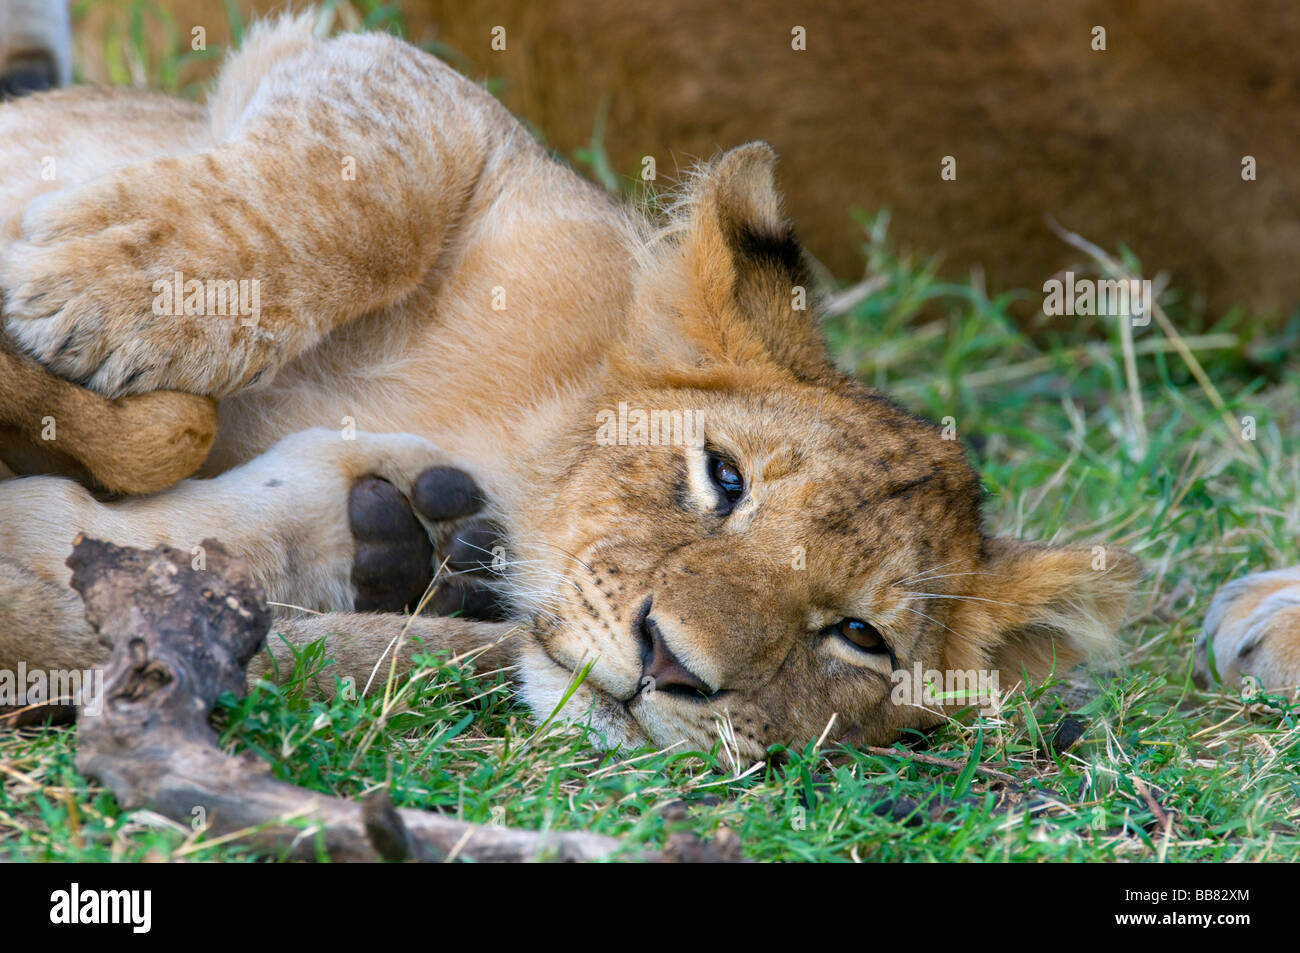 Lioness (Panthera leo), Cub, portrait, Masai Mara National Reserve, Kenya, Afrique de l'Est Banque D'Images